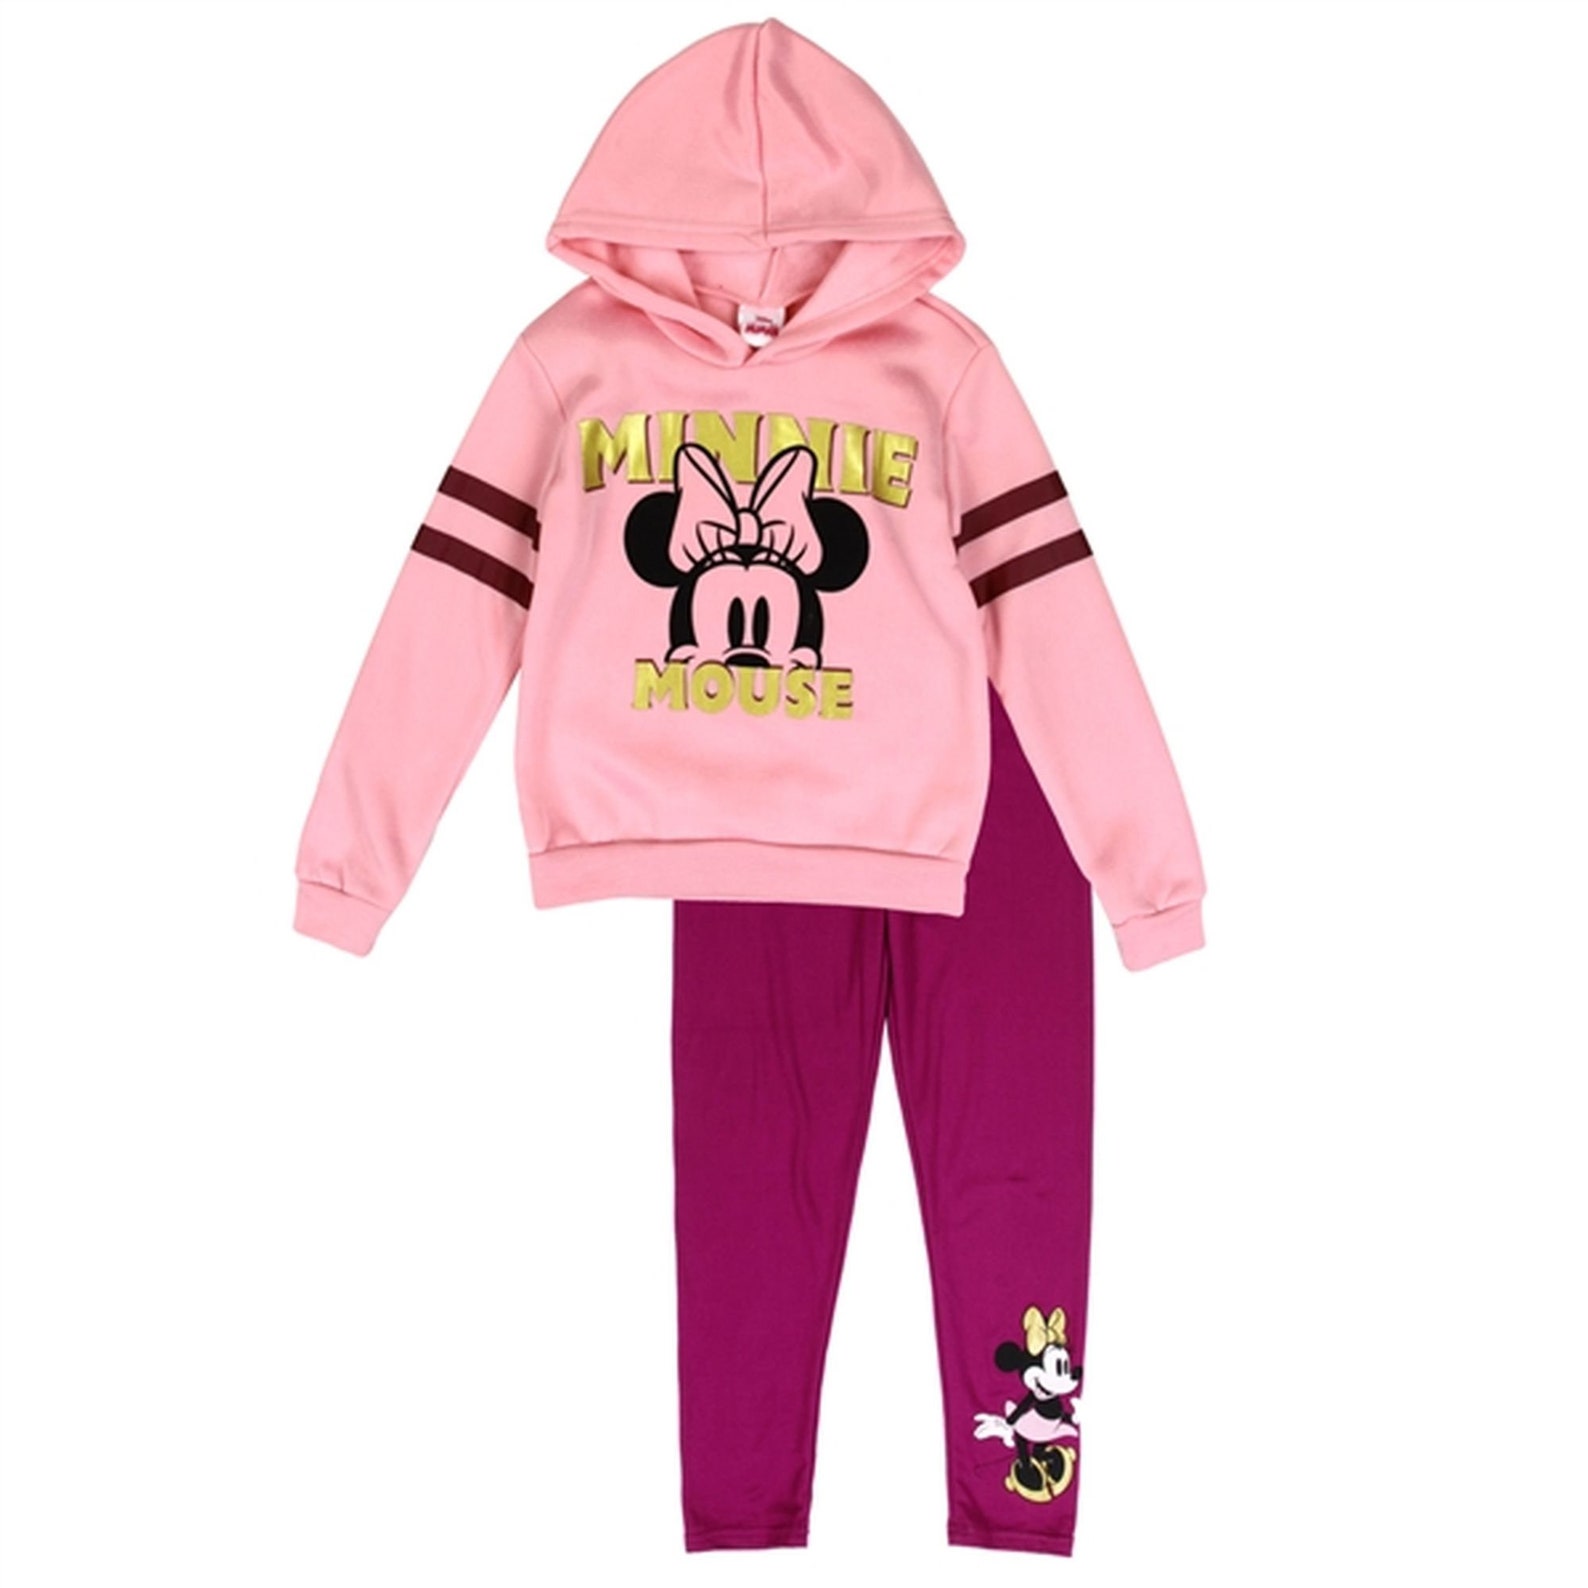 Disney MINNIE MOUSE Girls 2 pc Fleece Set Outfit Pink - Etsy.de